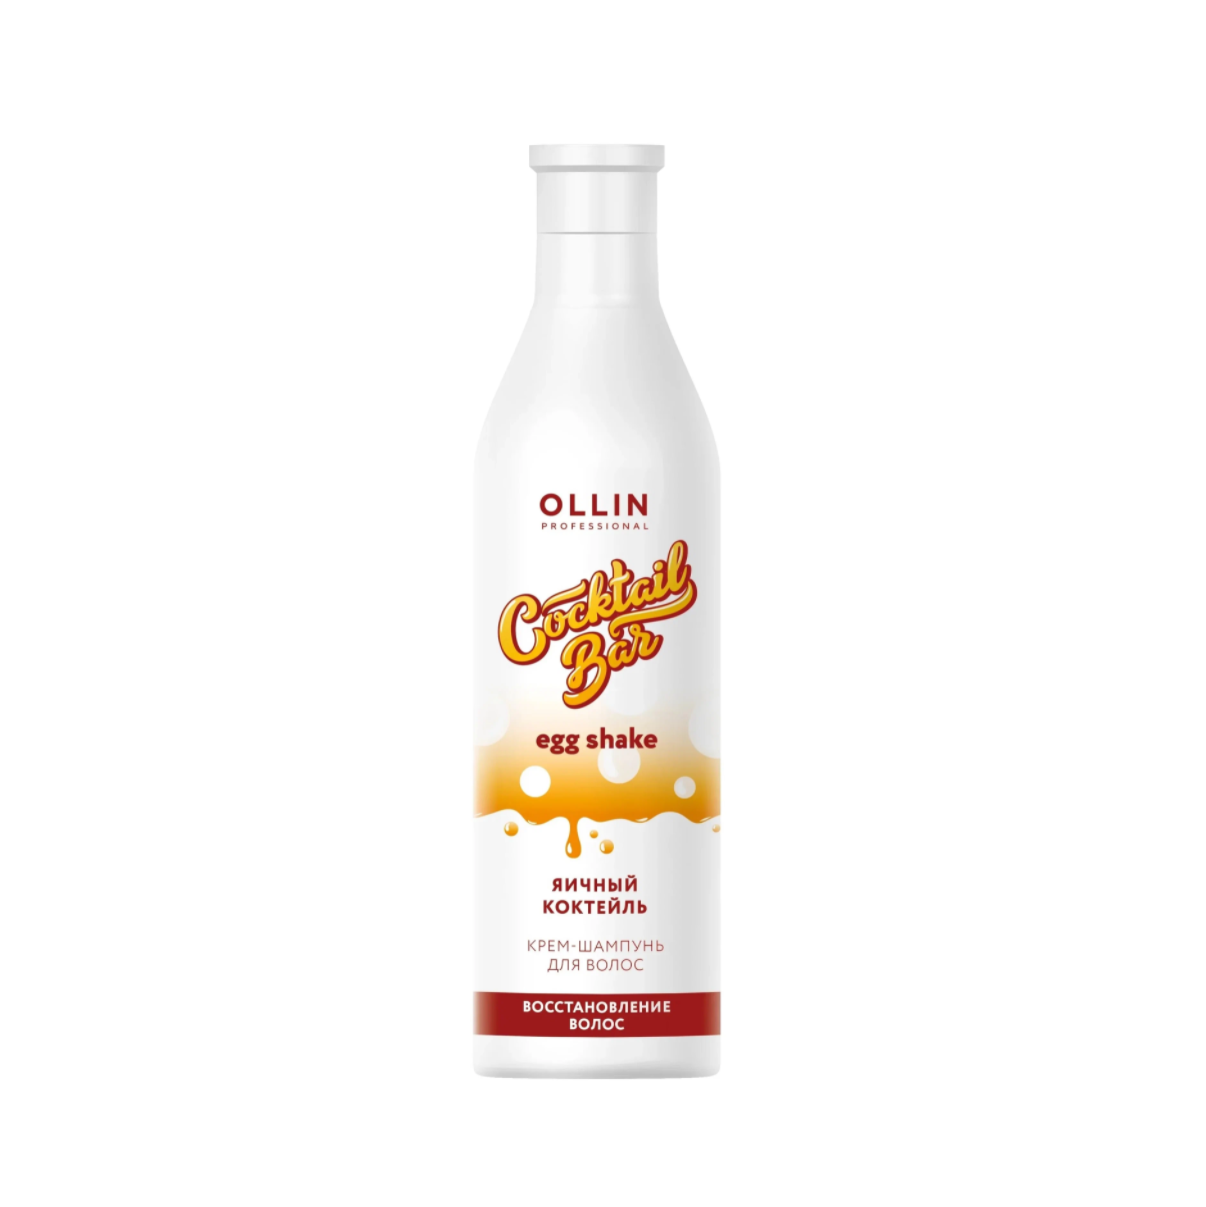 OLLIN, Крем-шампунь "Яичный коктейль" блеск и восстановление волос Cocktail Bar, 500 мл.